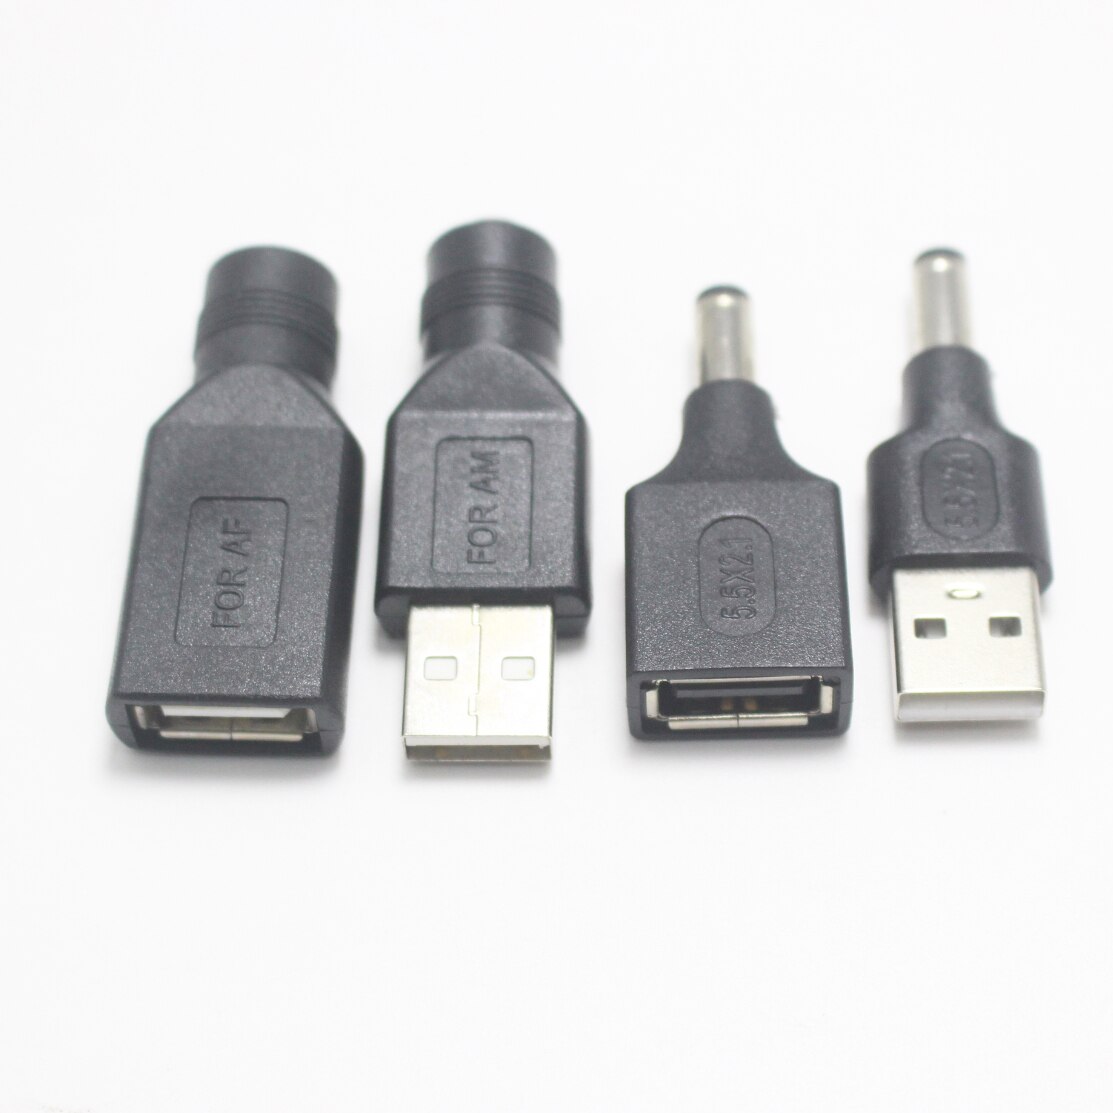 Juego de USB de uso común, conector hembra de 5,5x2,1/5,5x2,1mm a enchufe macho USB 2,0, adaptador de alimentación de CC macho a hembra, 1 ud.